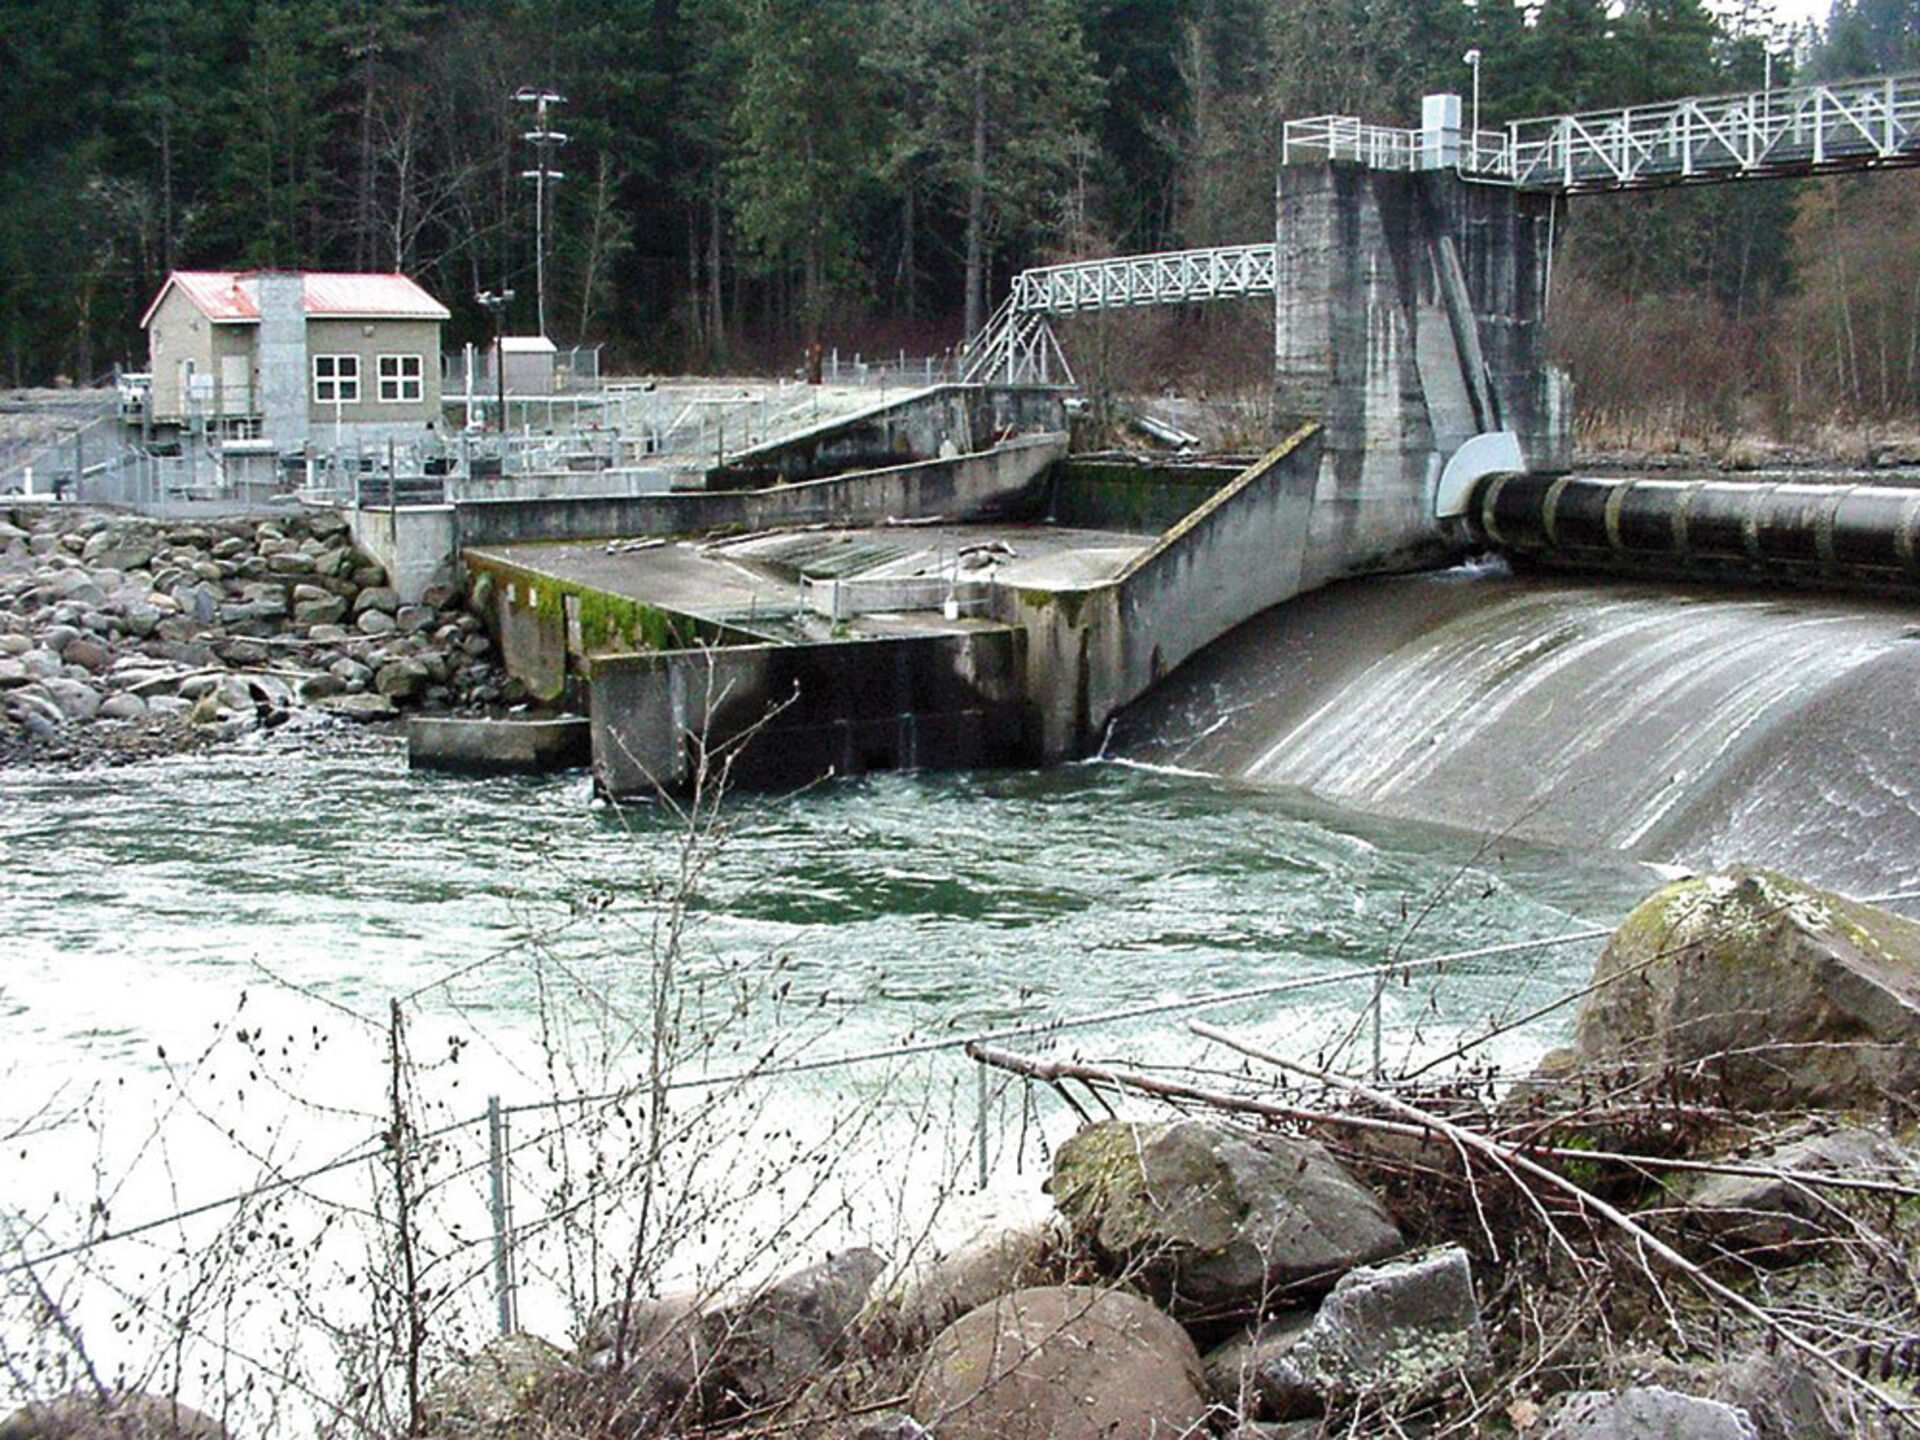  En faveur du saumon arc-en-ciel, le barrage de Powerdale sur la rivière Hood a été démoli en 2010.  